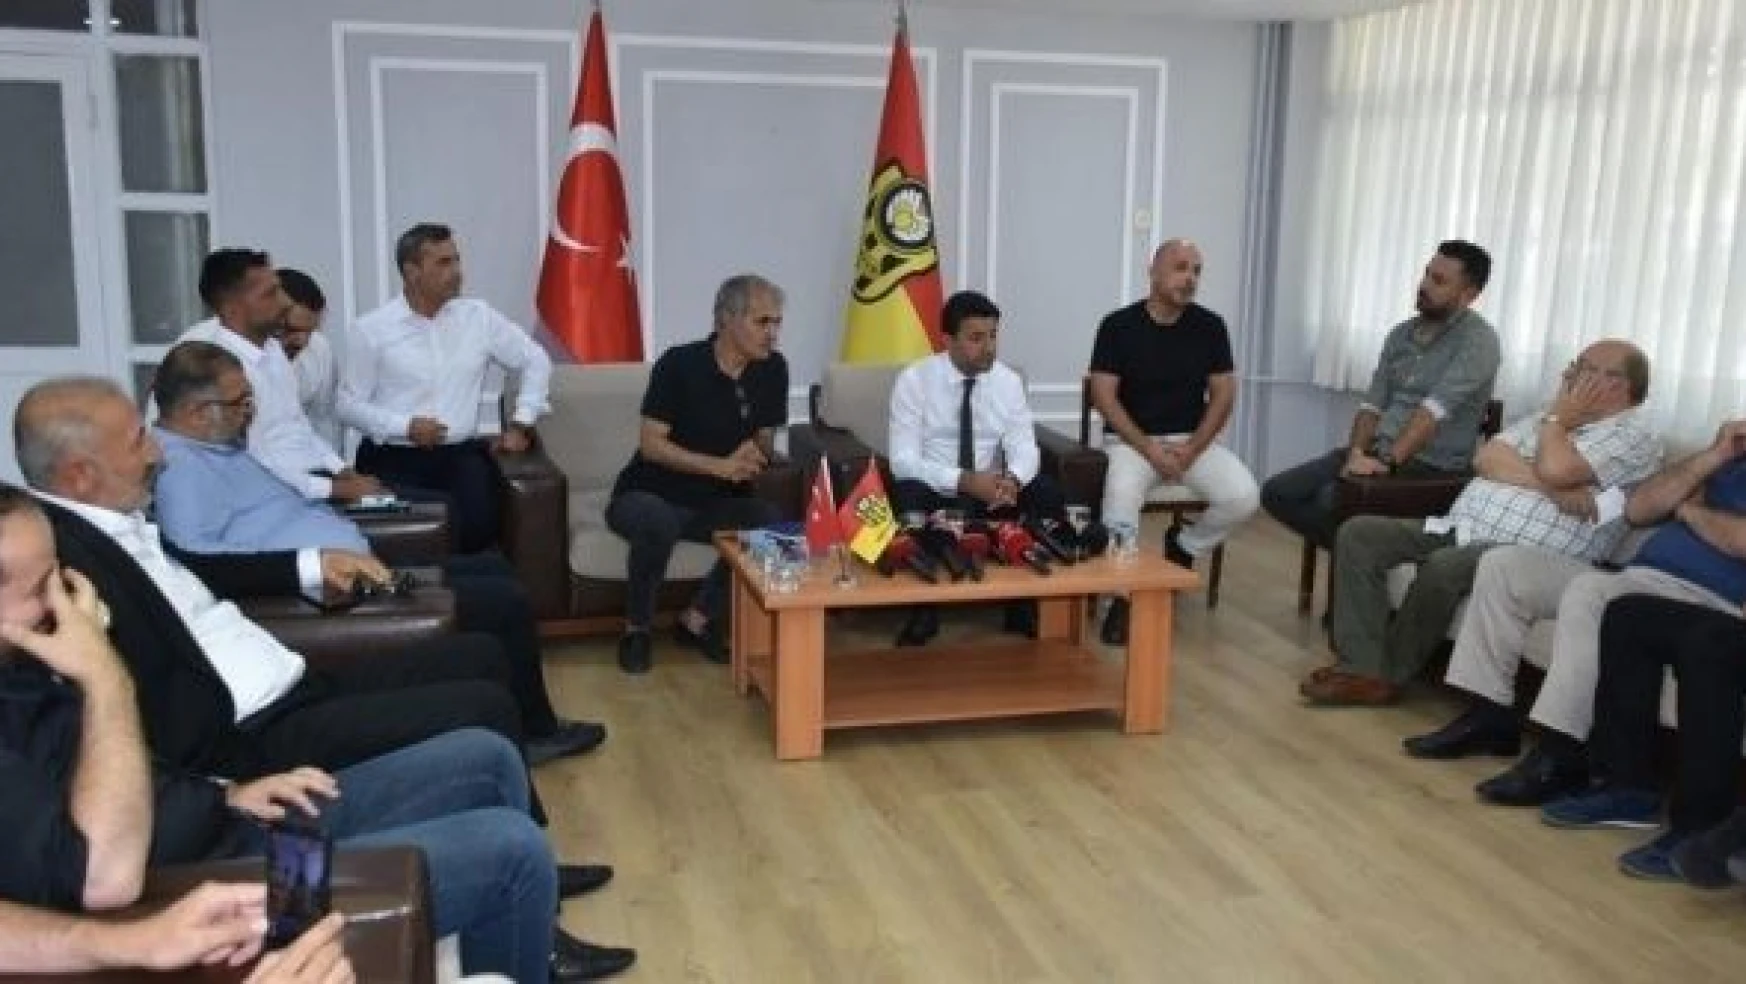 Yeni Malatyaspor Kulübü Başkanı Yaman:  "Biz başarıya gideceğiz"